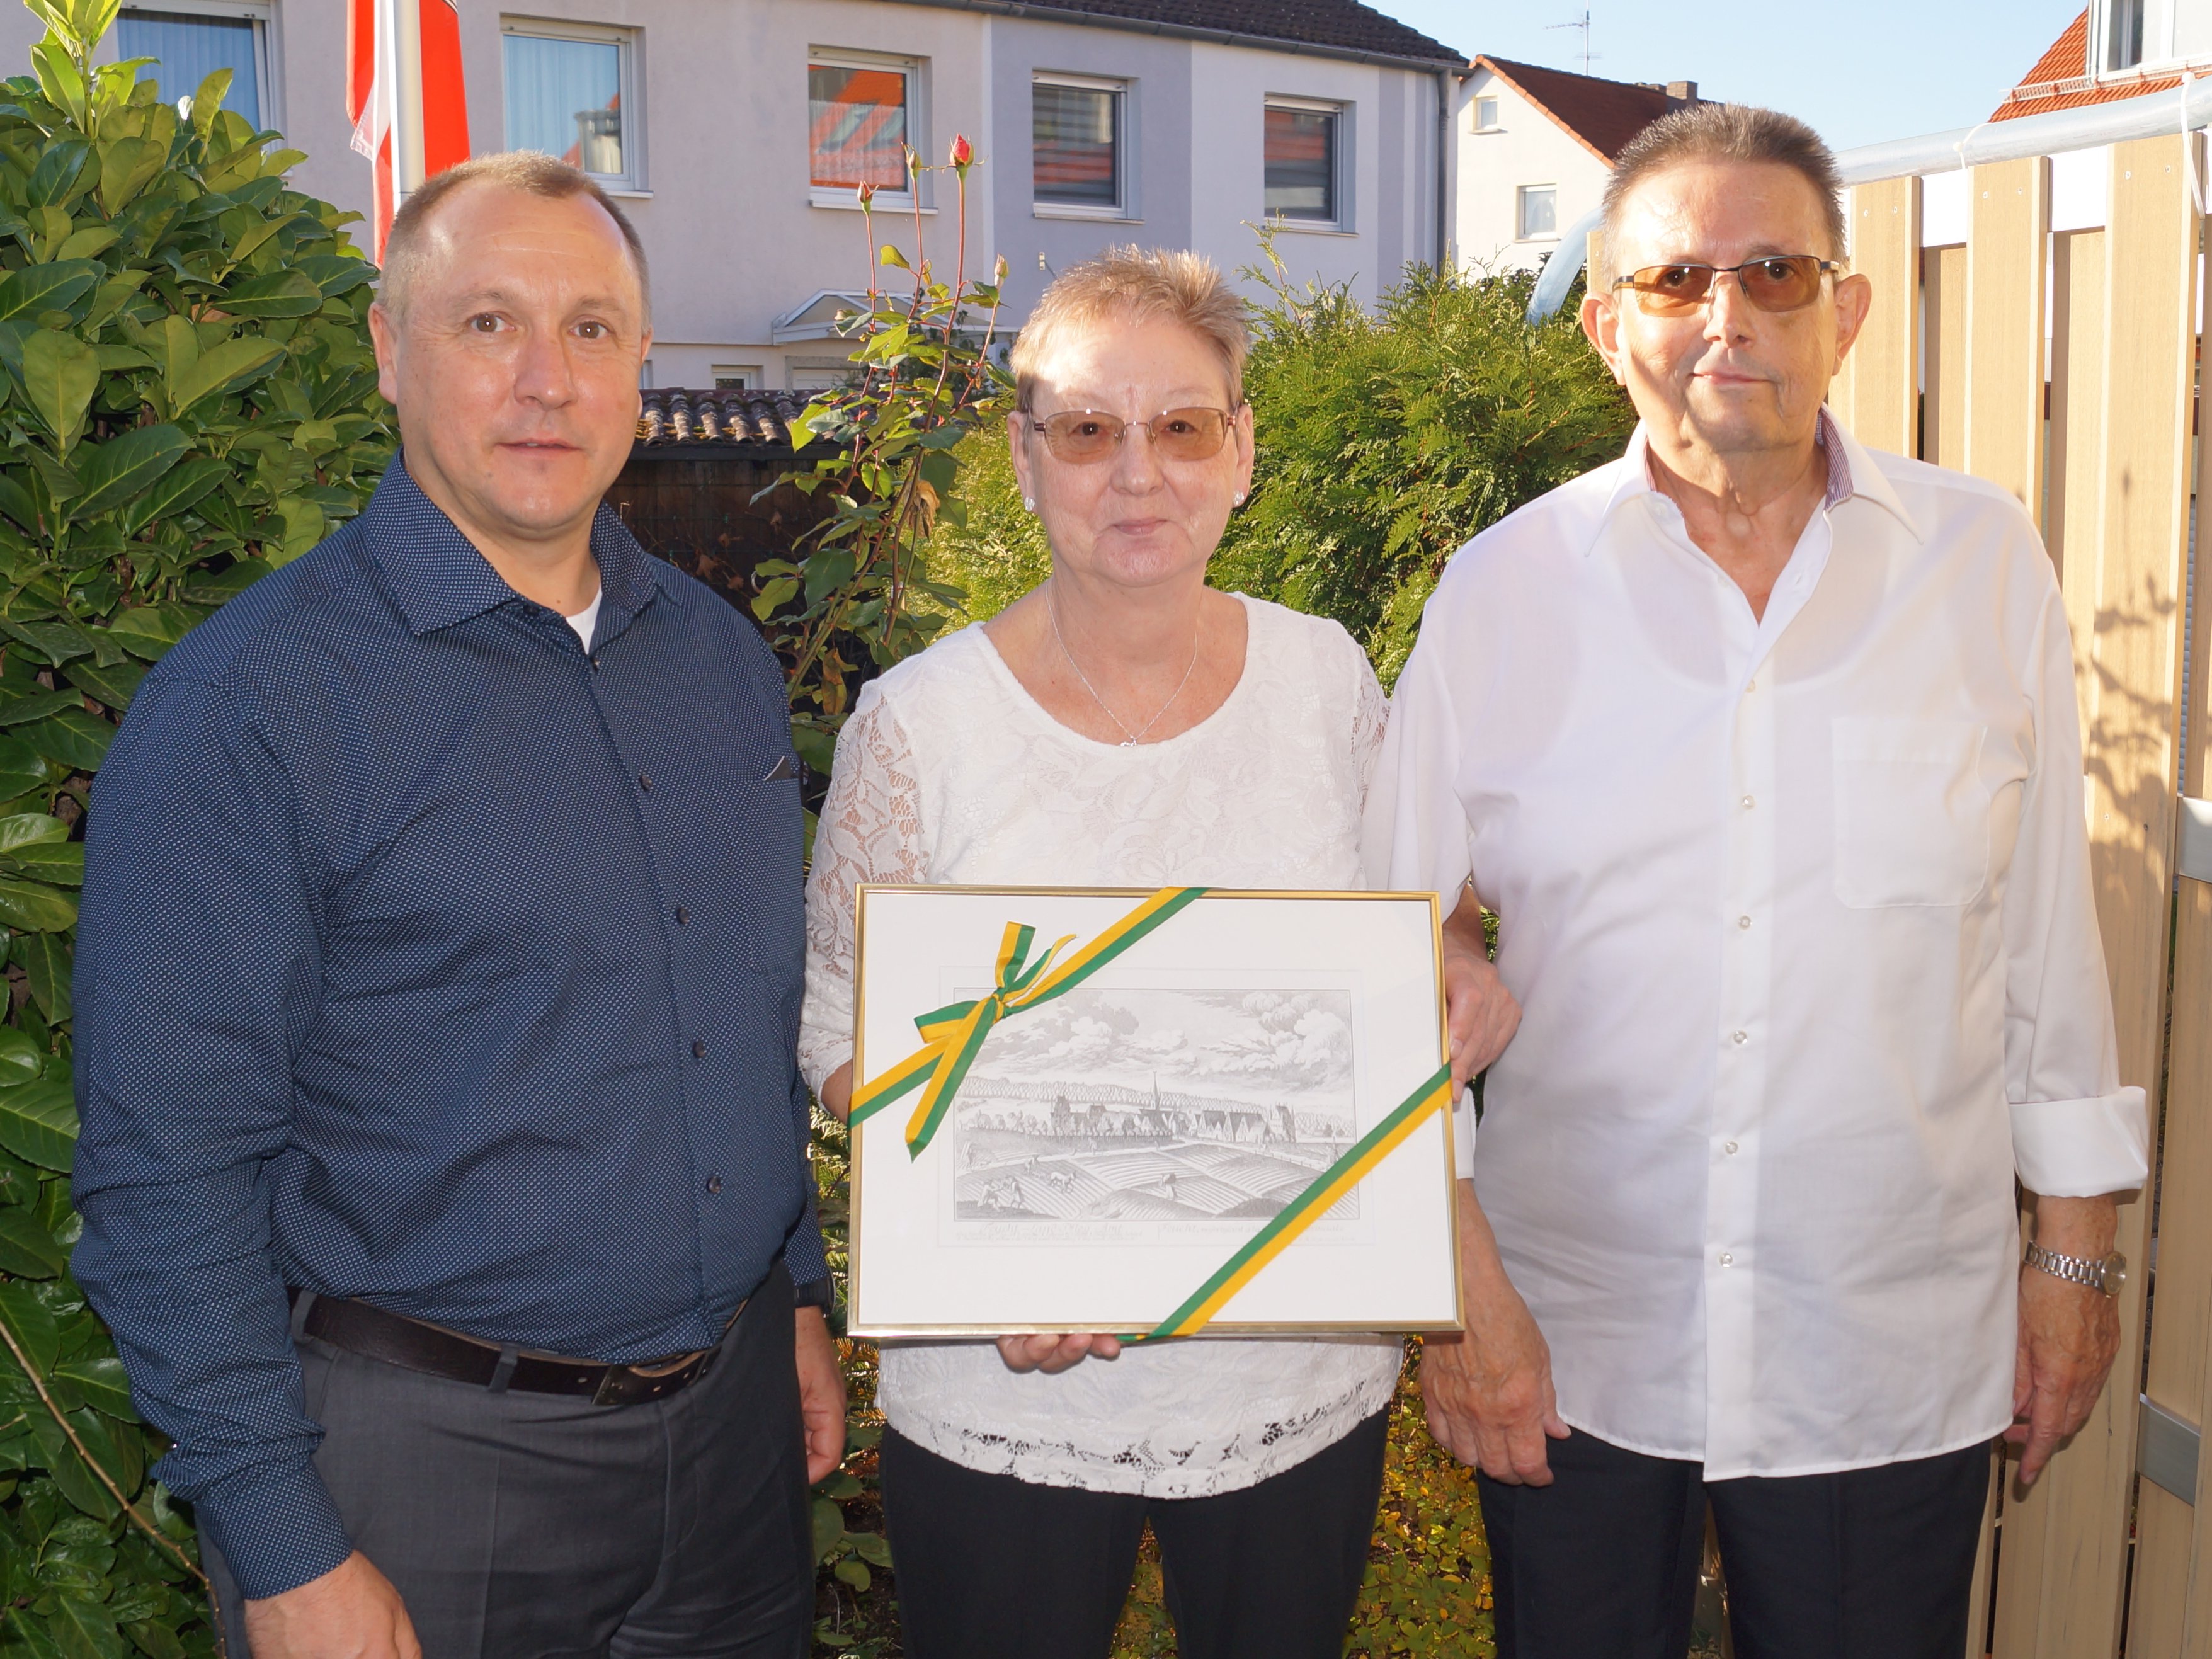 Erster Bürgermeister Kotzur mit dem Ehepaar Nöth